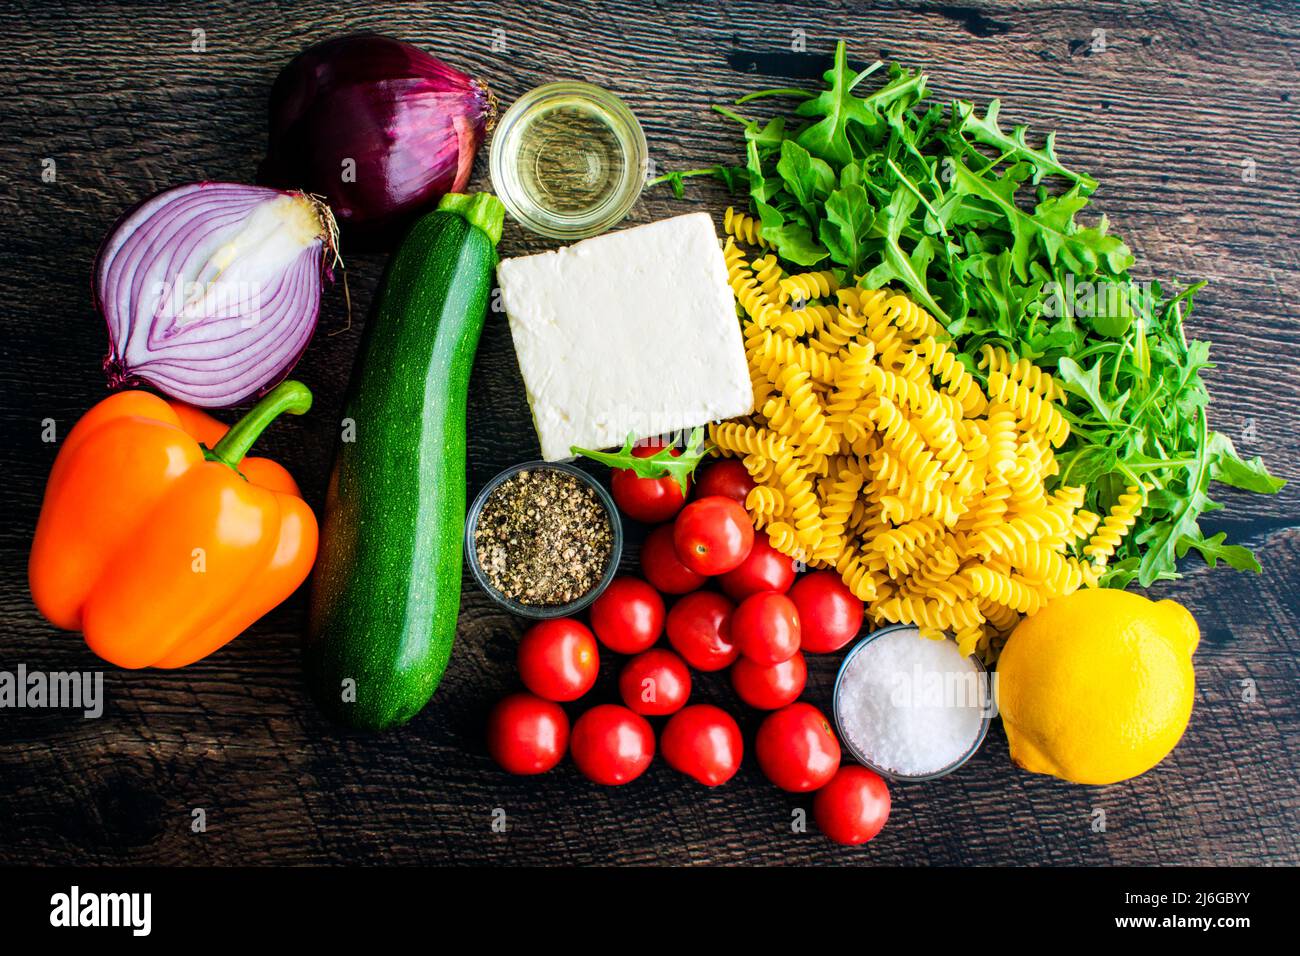 Vue en hauteur des pâtes de légumes rôties aux feta Ingrédients: Fromage feta, légumes, huile d'olive et autres ingrédients crus sur fond de bois Banque D'Images